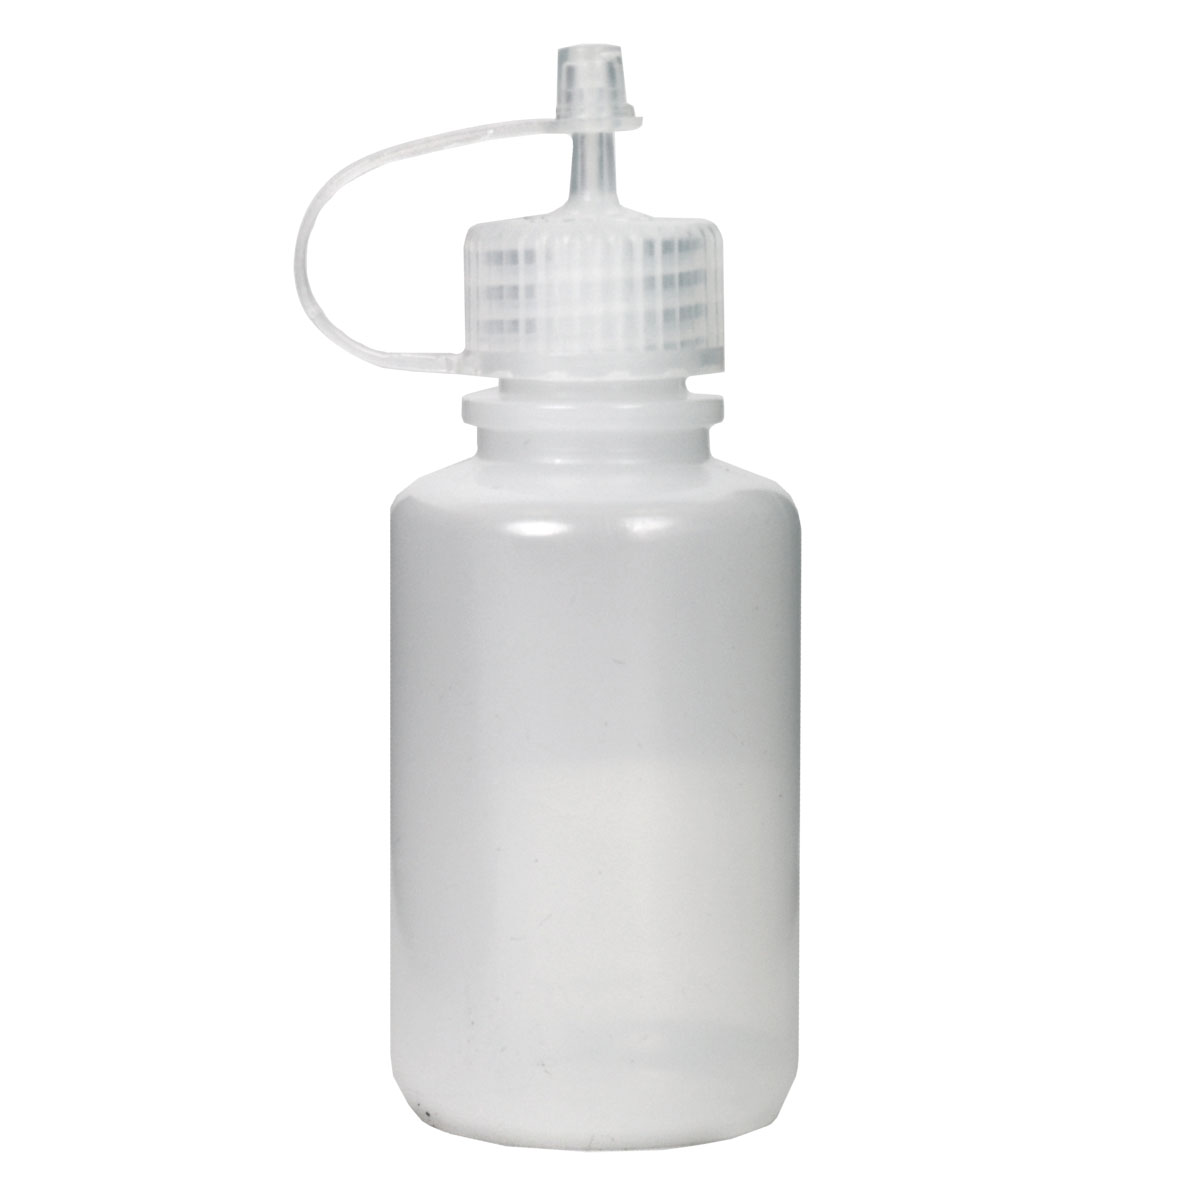 Produktbild von Nalgene Spenderflasche - 60ml - Leerflasche